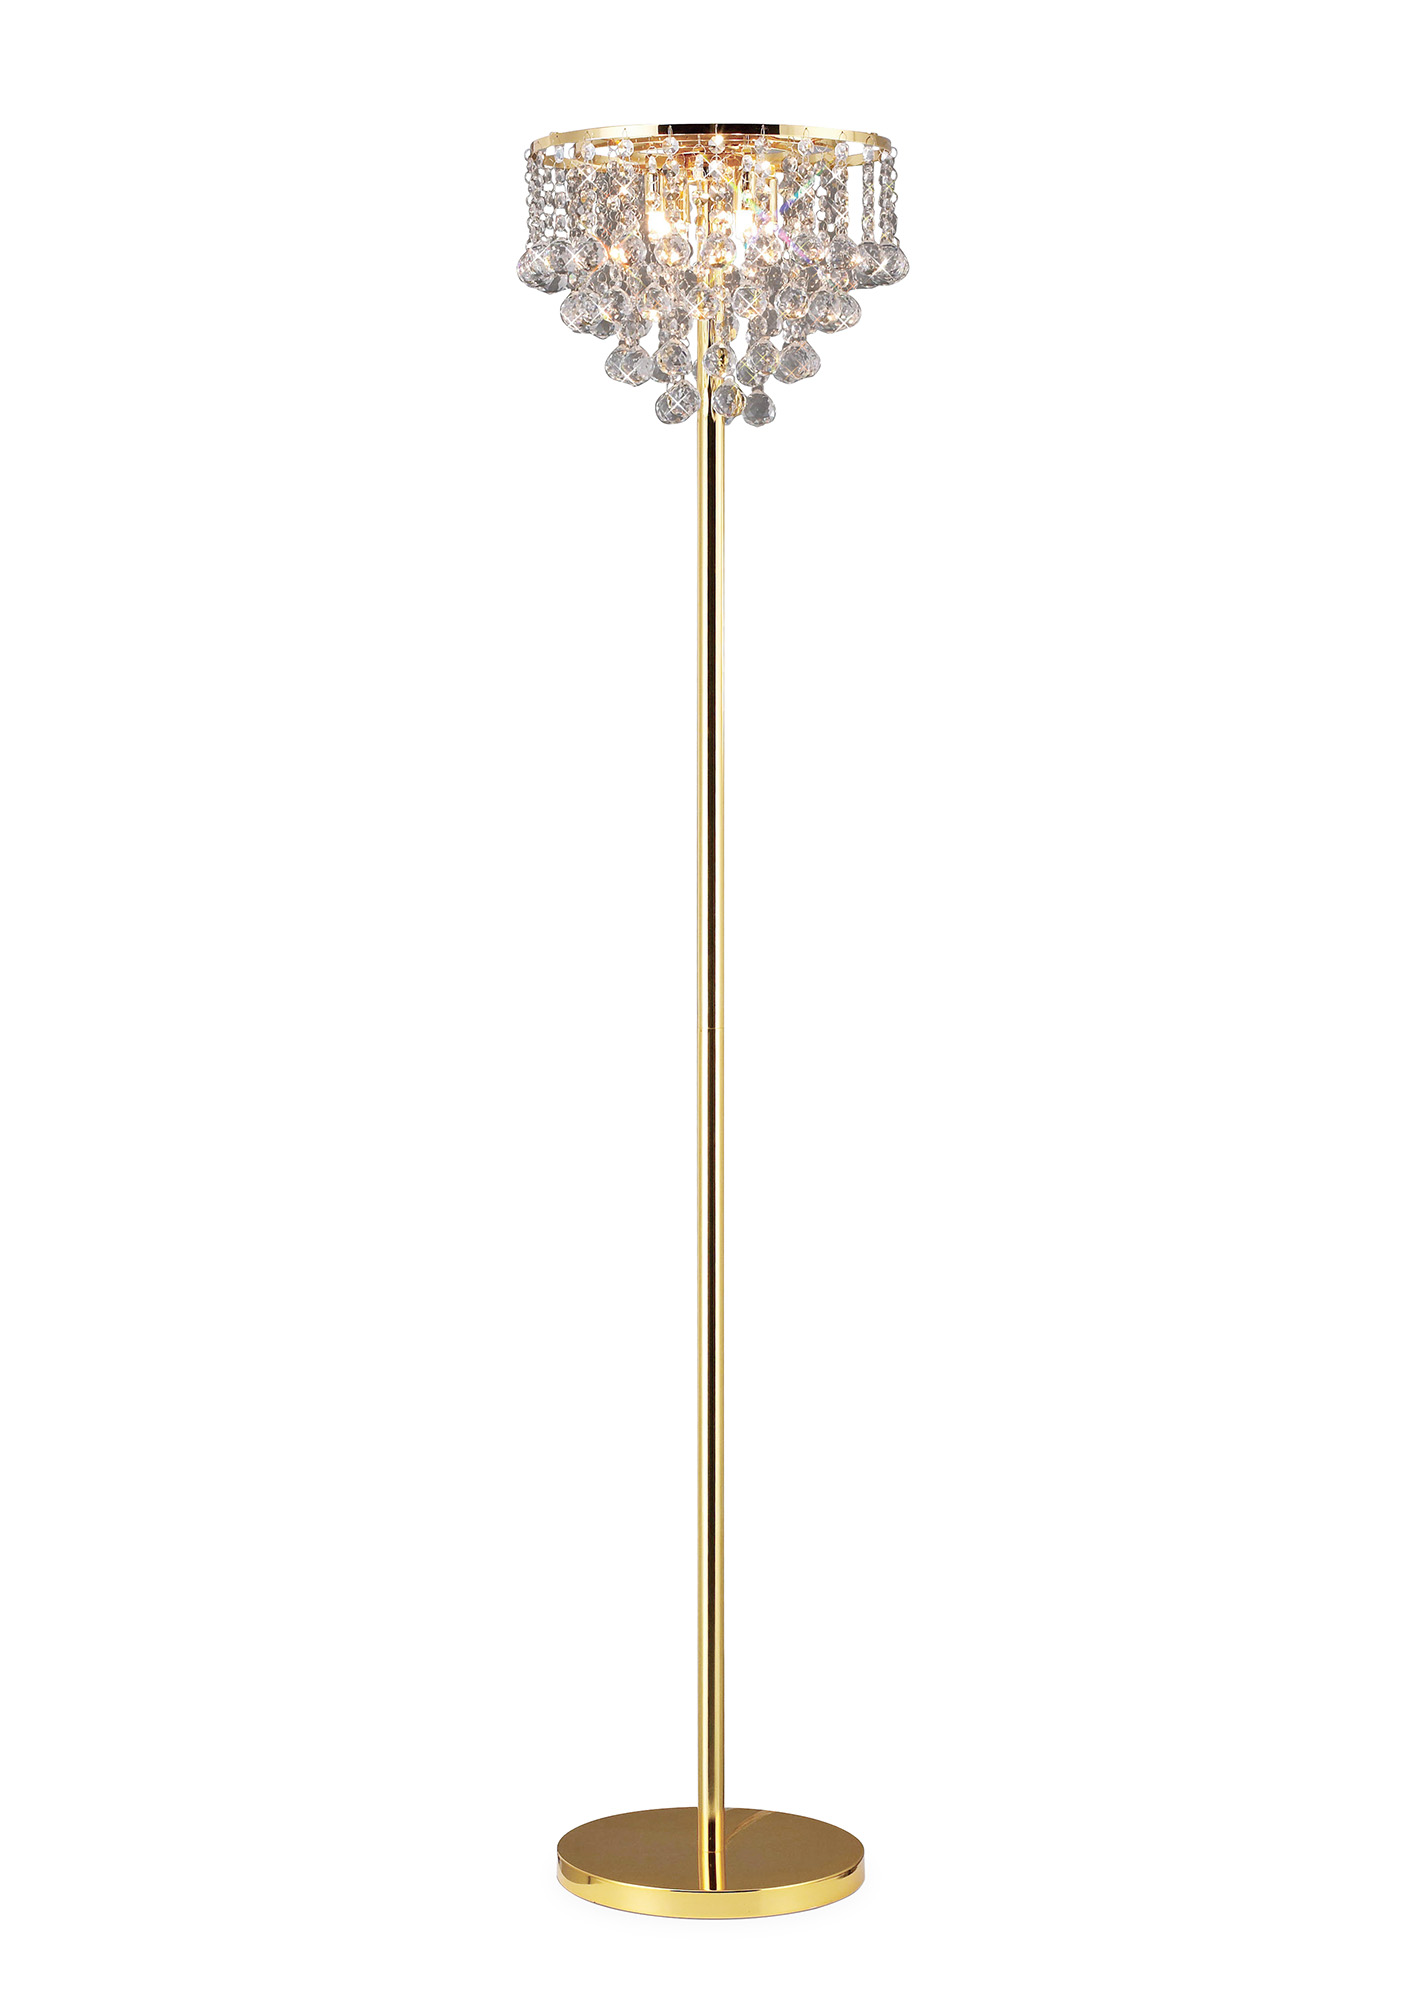 Atla Floor Lamp 4 Light French Gold, Crystal Floor Lamp Uk